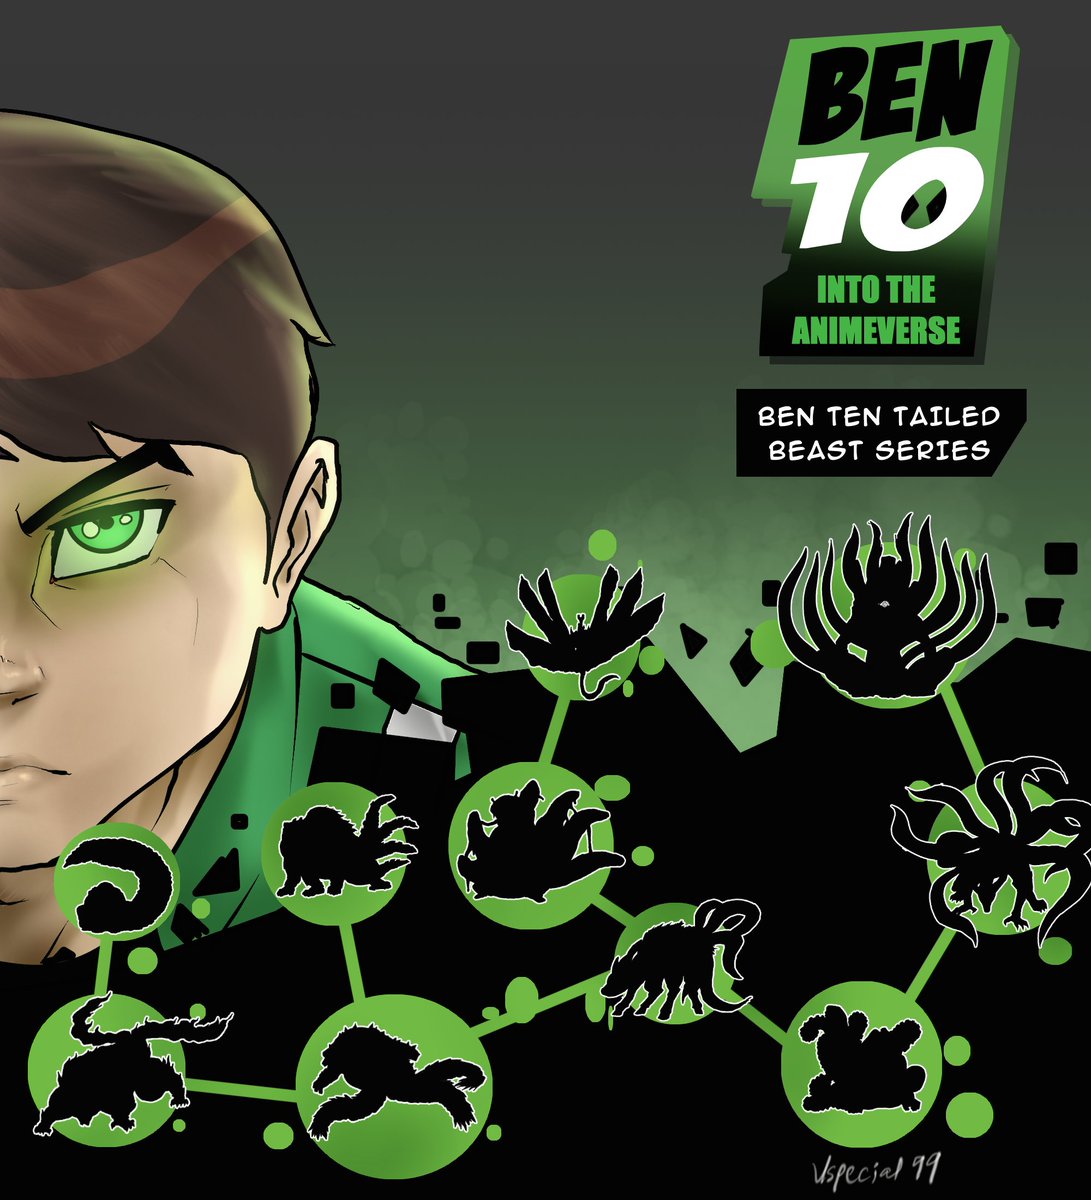 And so, The Ben 10 x The Animeverse series branches into the Narutoverse!

#Ben10 #NARUTO #fandom 
🔥🔥